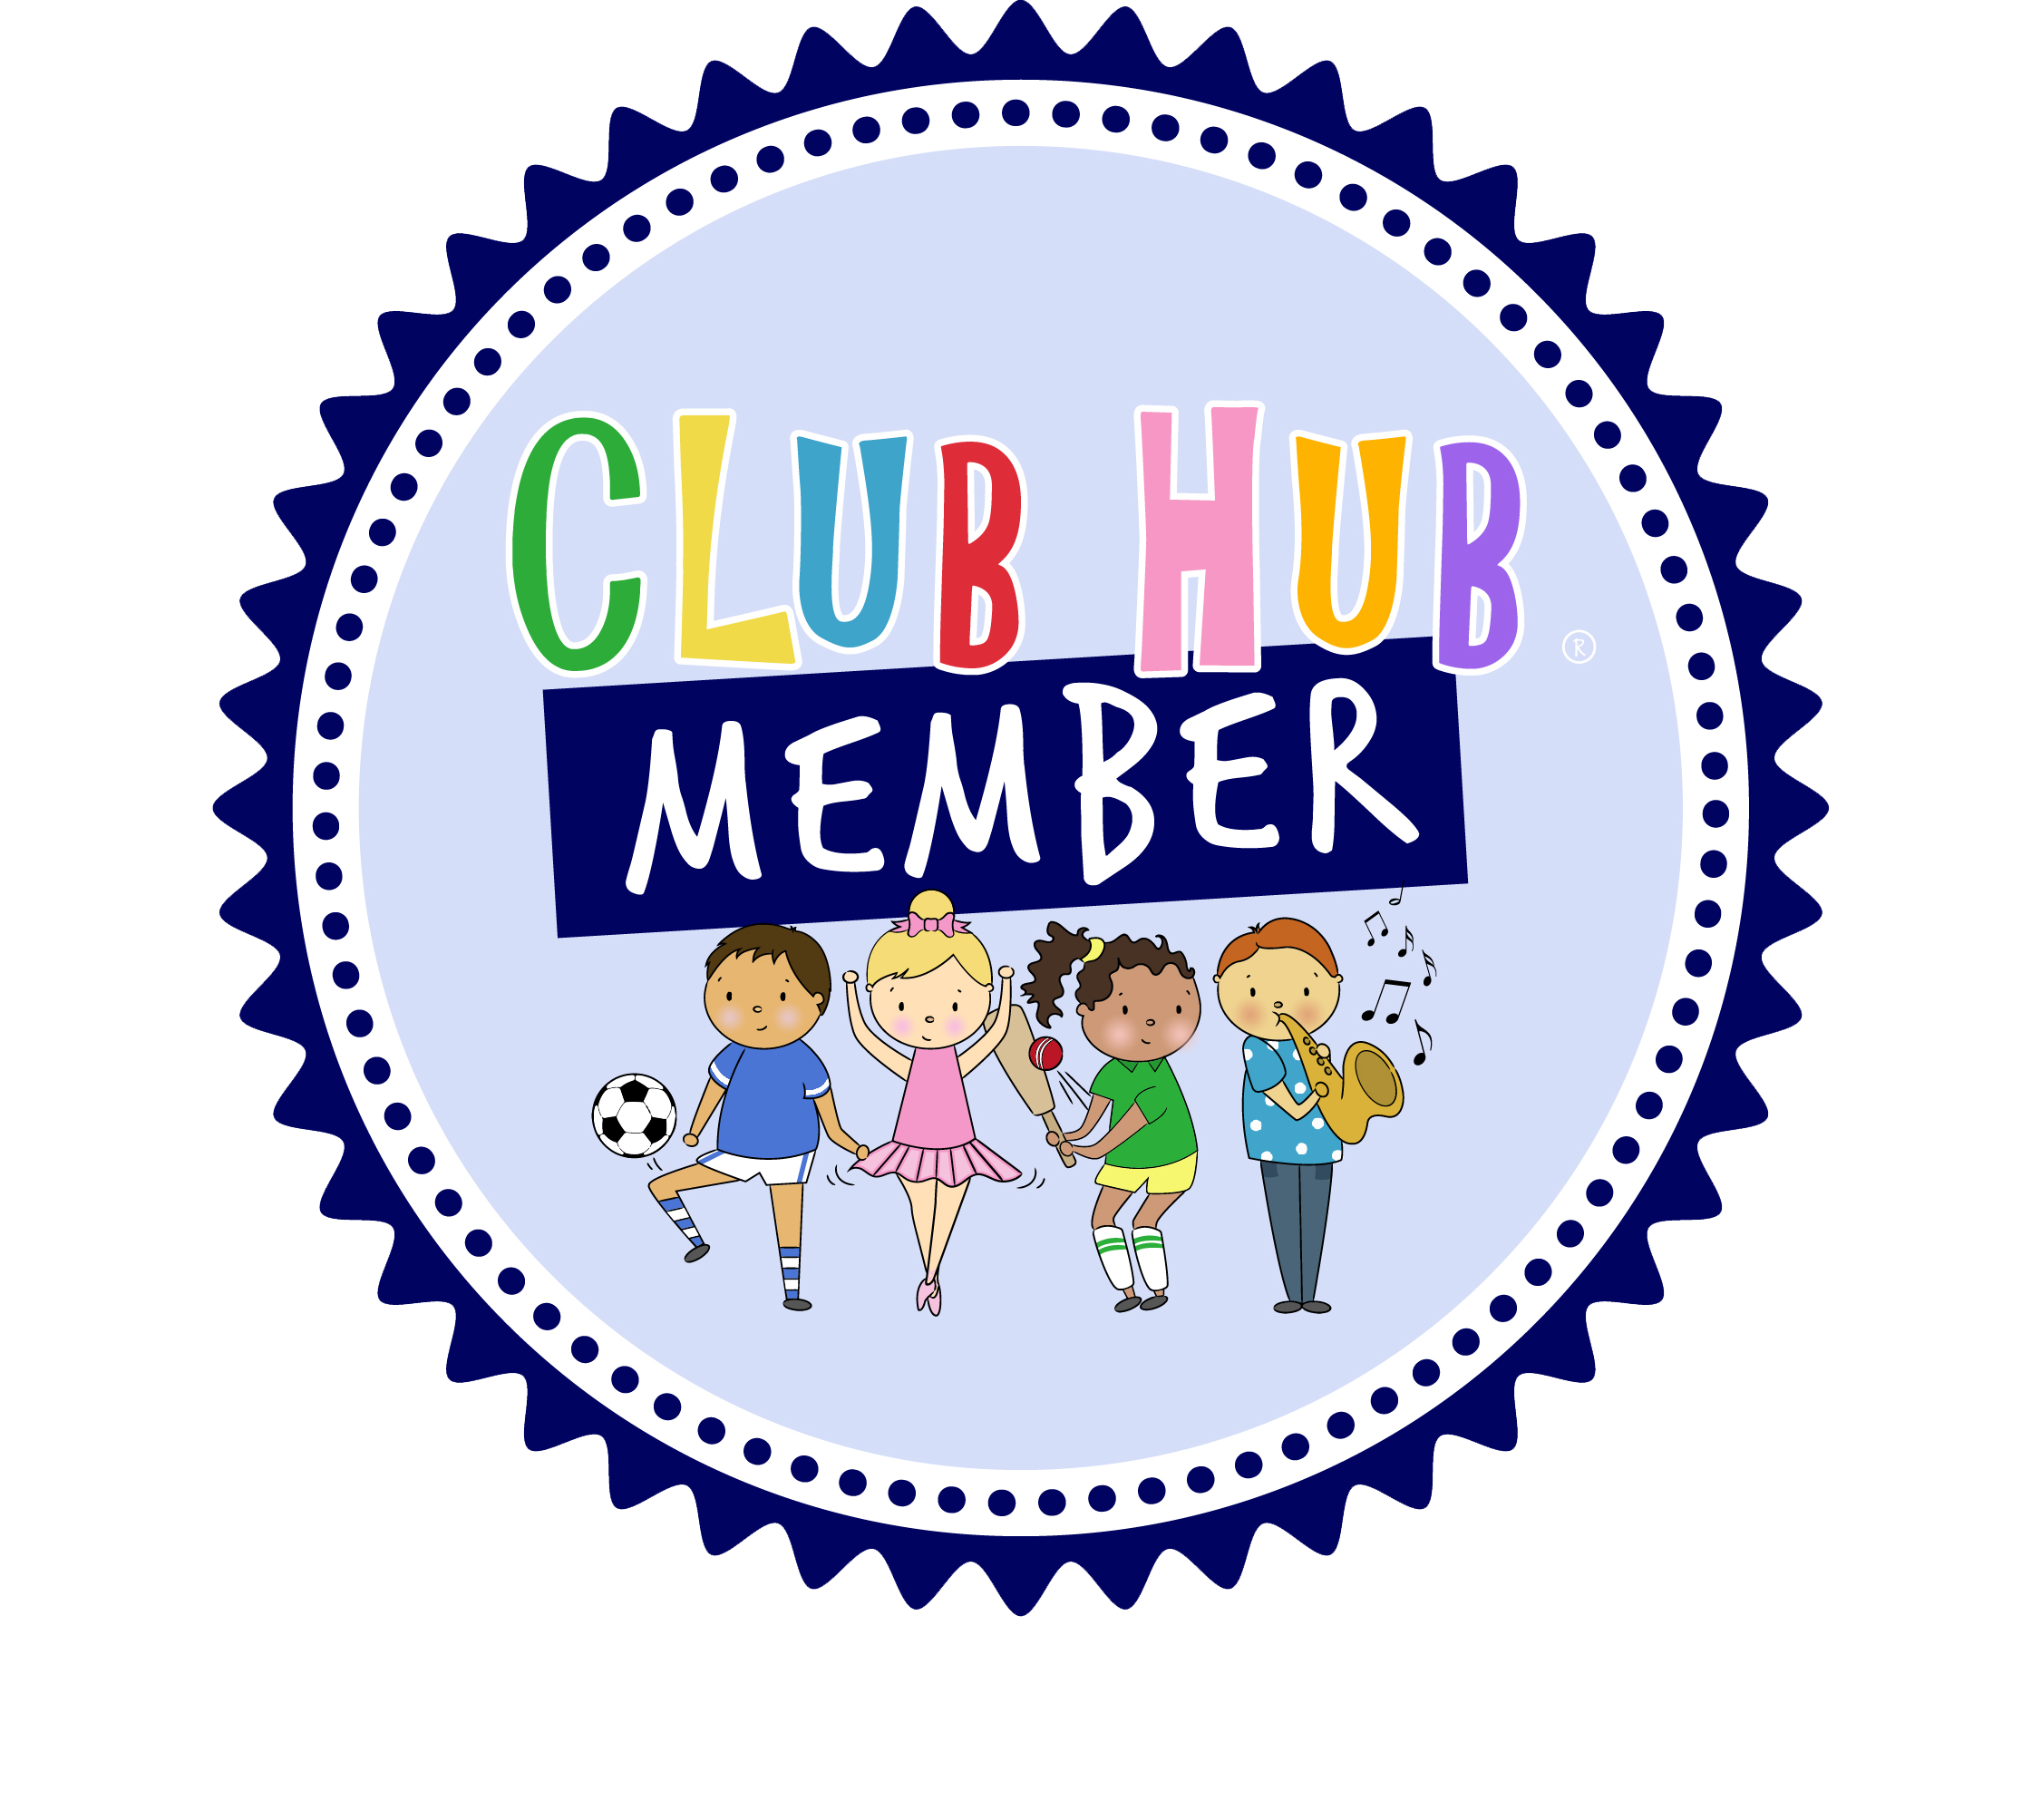 023422512007750-club-hub-verification-badge-16965157304694.png